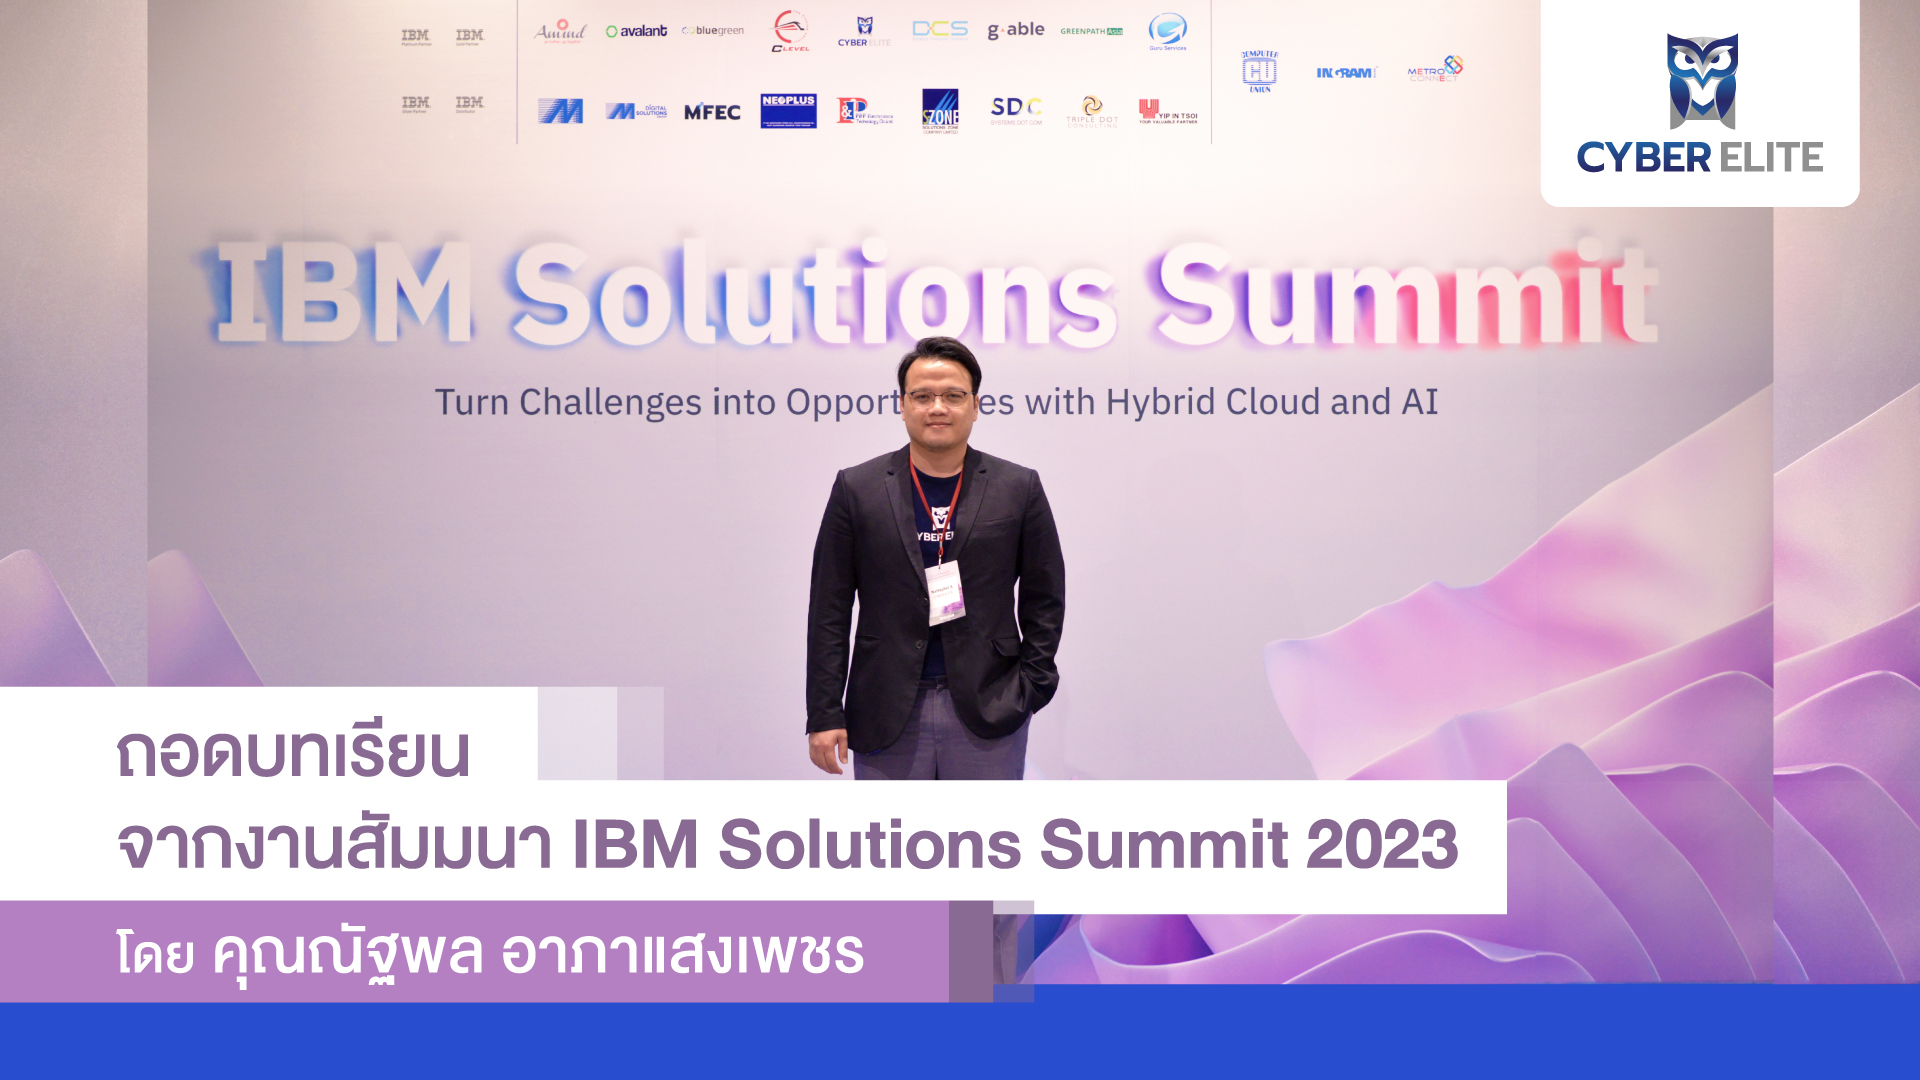 ถอดบทเรียนจากงานสัมมนา IBM Solutions Summit 2023